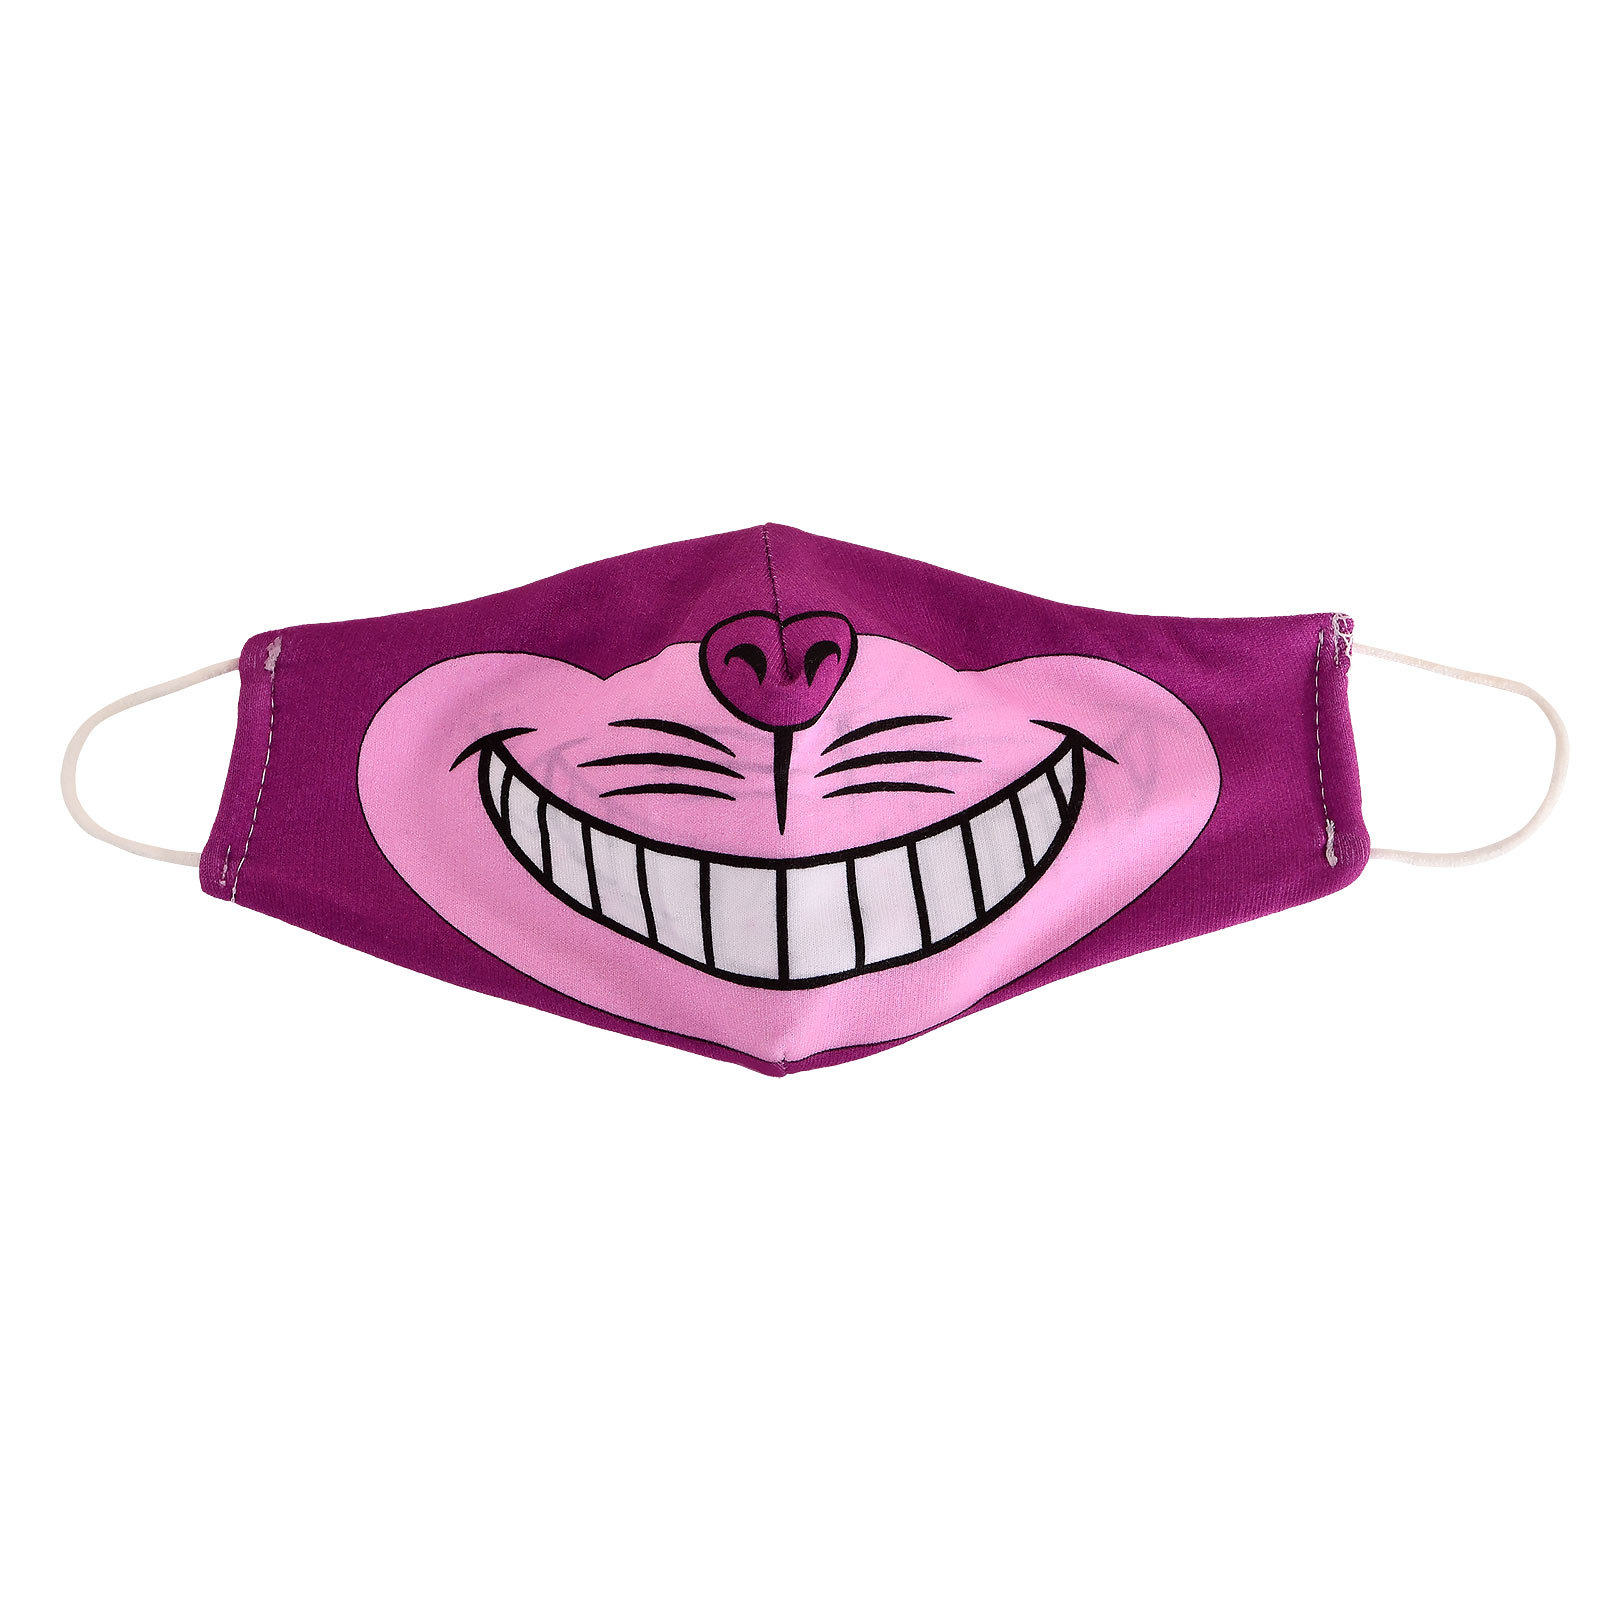 Cheshire Kat Gezichtsmasker voor Alice in Wonderland Fans Roze